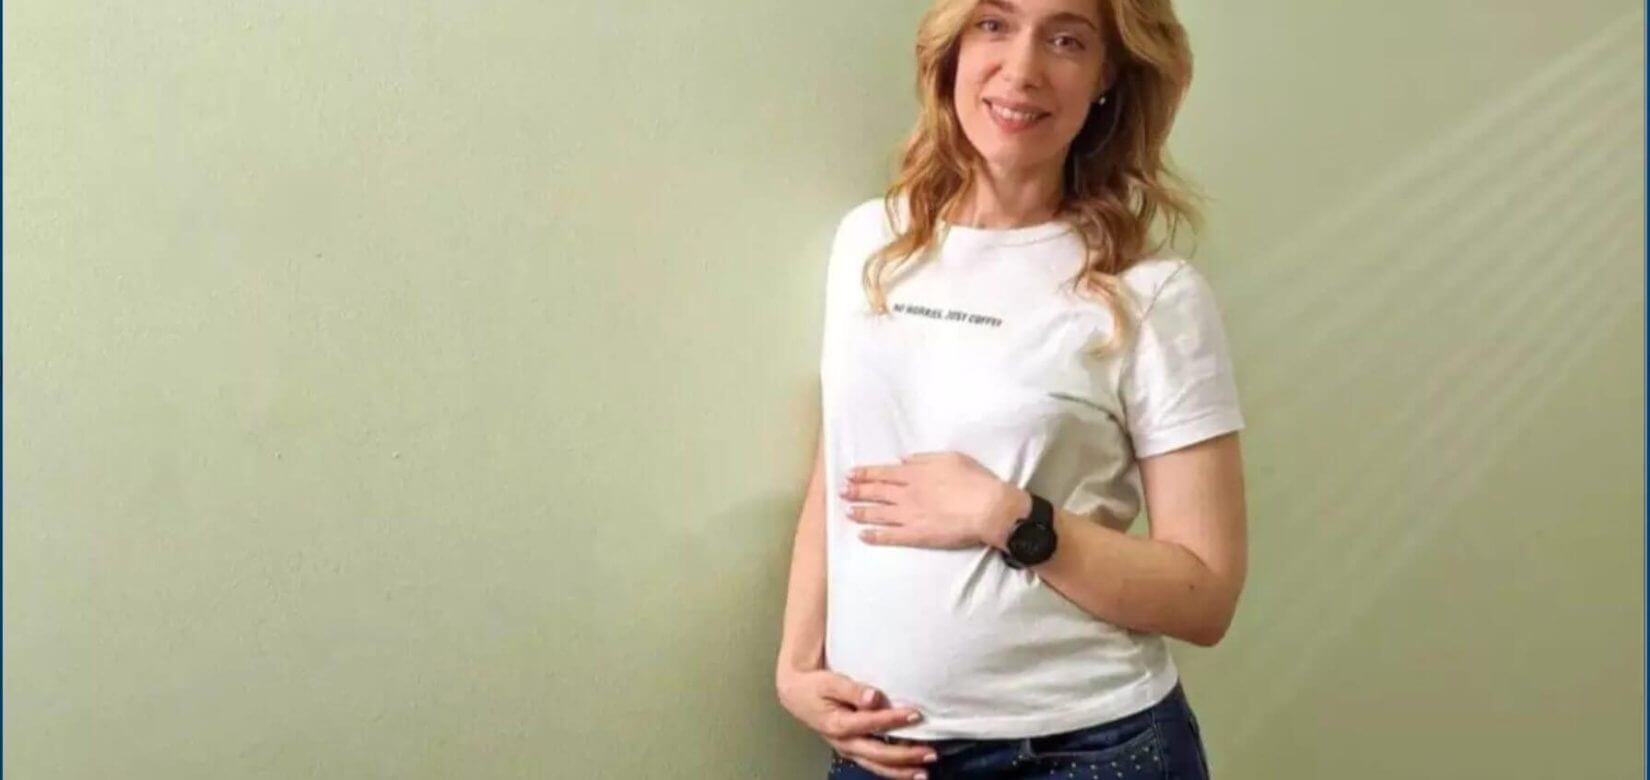 Ντάνη Γιαννακοπούλου: Οι νέες φωτογραφίες από την εγκυμοσύνη της και η αλλαγή που έκανε στην εμφάνισή της